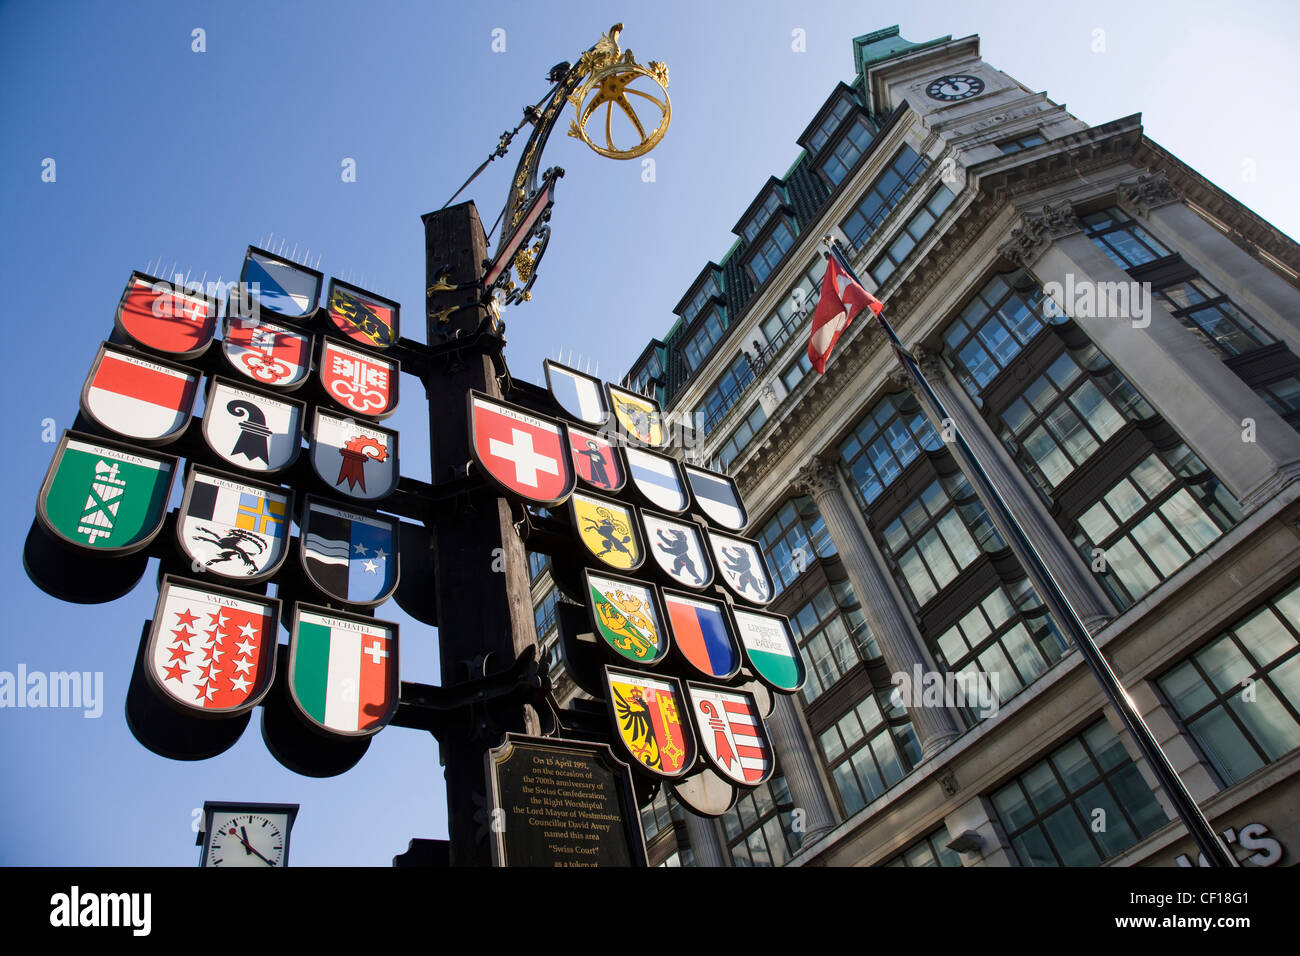 Struttura cantonali dei cantoni svizzeri al tribunale svizzero, Leicester Square, Londra Foto Stock